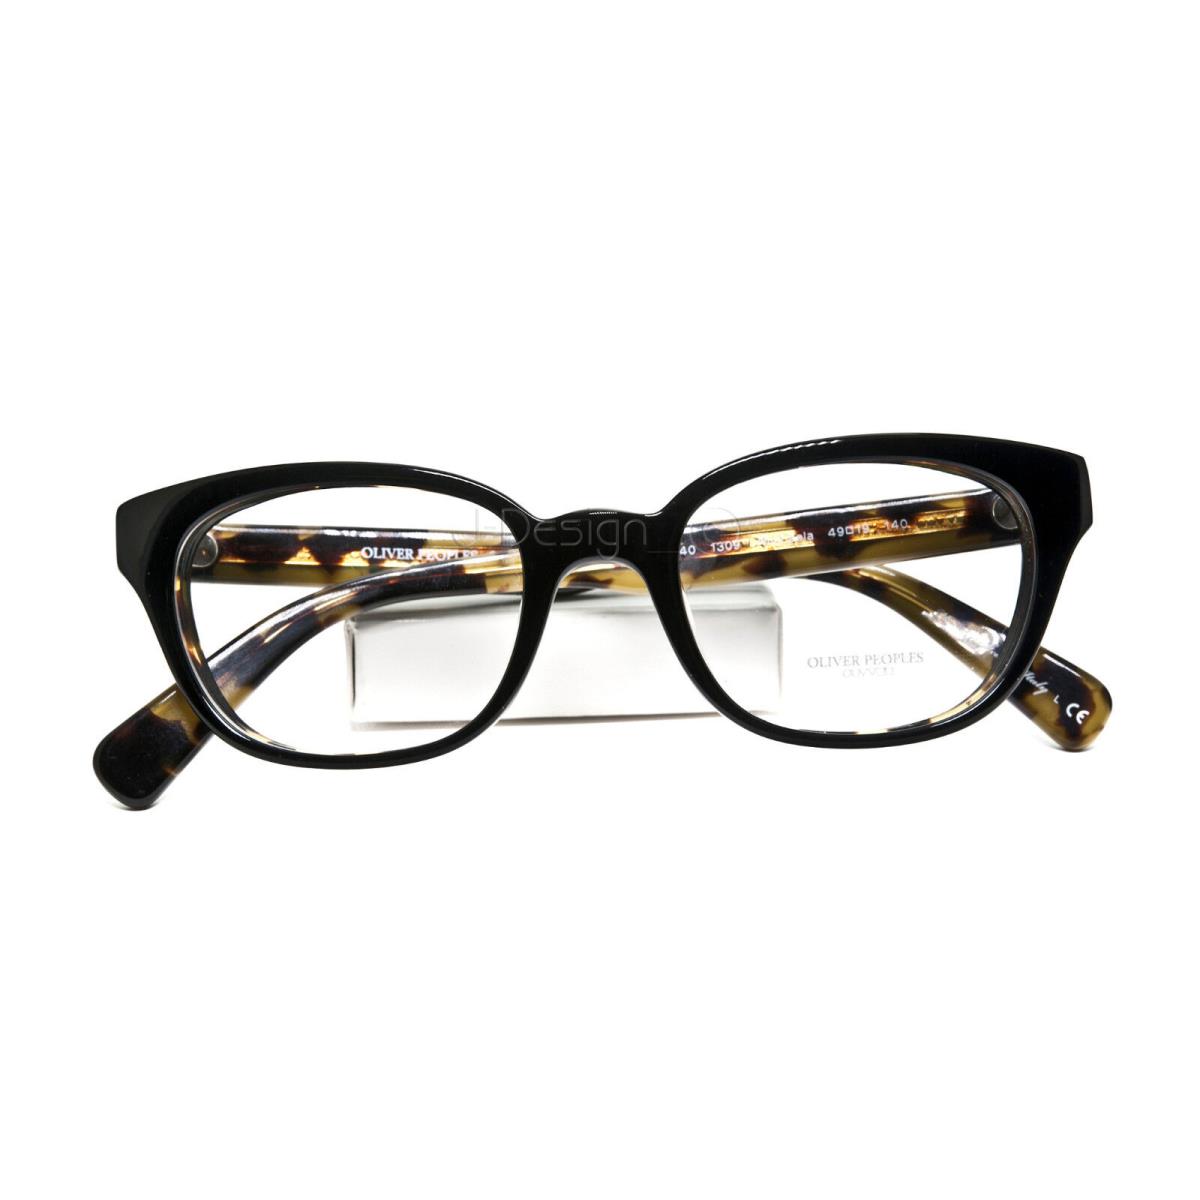 Oliver Peoples Michaela OV 5240 1309 Black Tortoise 49/19/140 Eyeglasses |  057705408532 - Oliver Peoples eyeglasses - 1309 (Black/Tortoise) Frame,  Clear Lens | Fash Direct